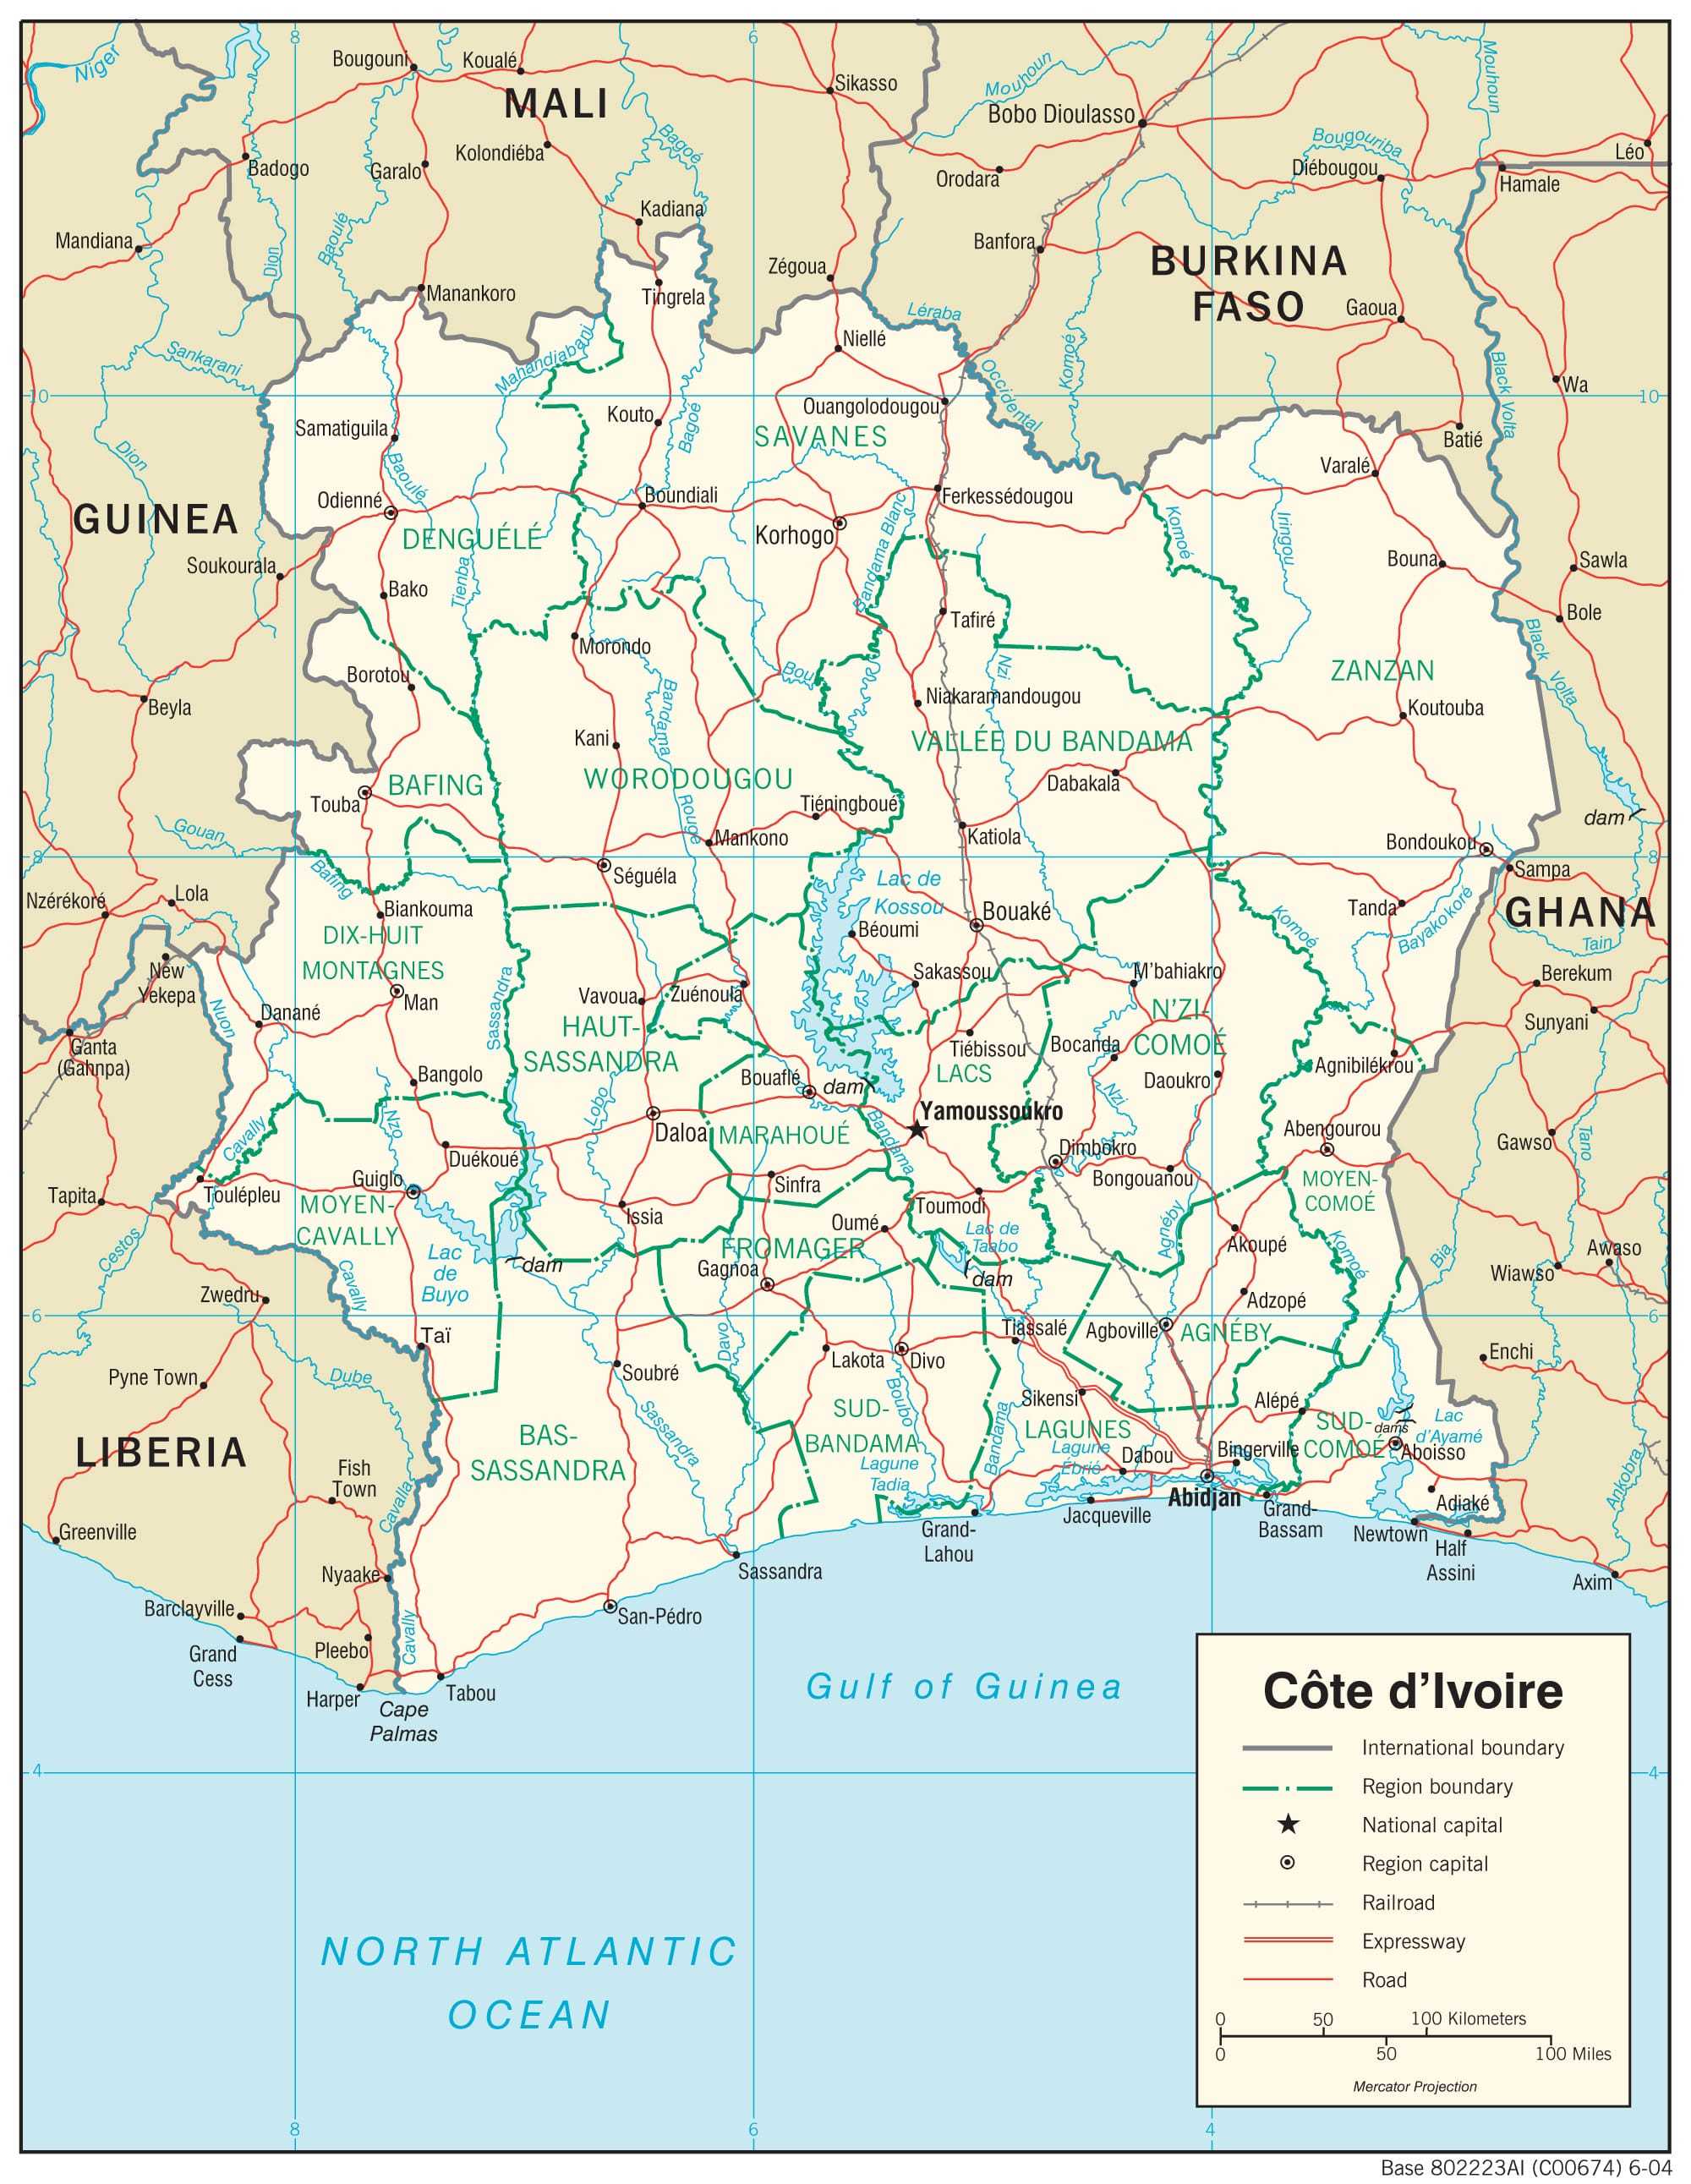 Transportation map of Cote d'Ivoire